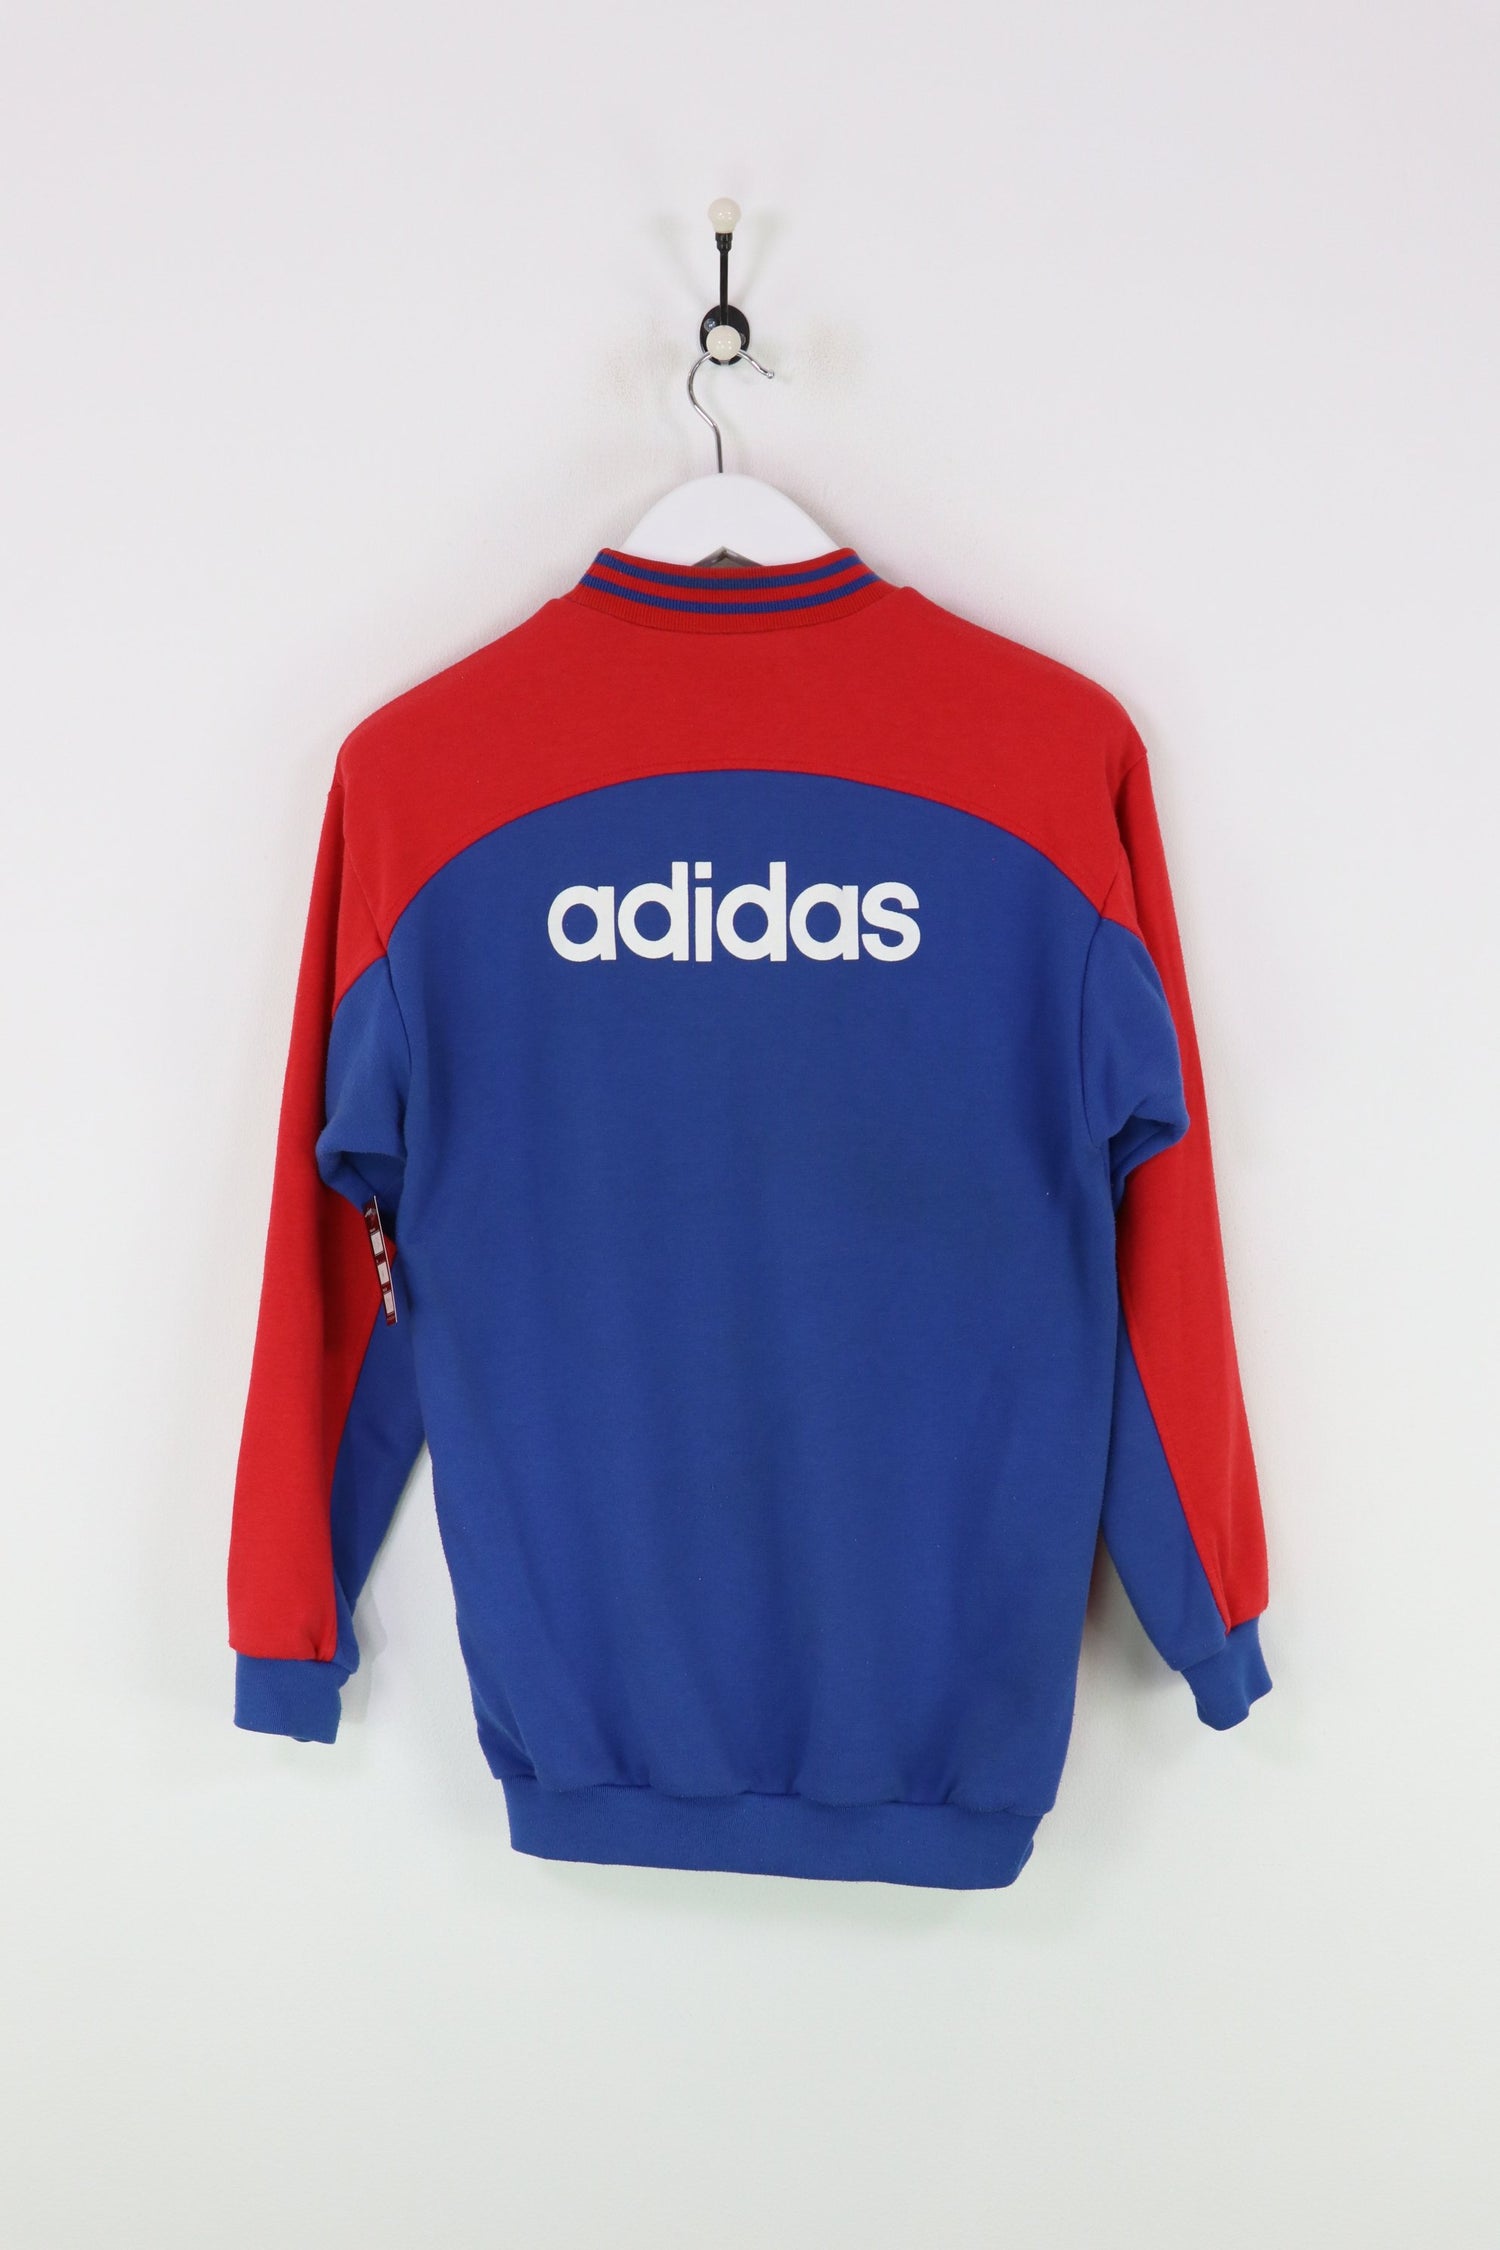 Adidas Bayern Munich Sweatshirt Red/Blue Medium